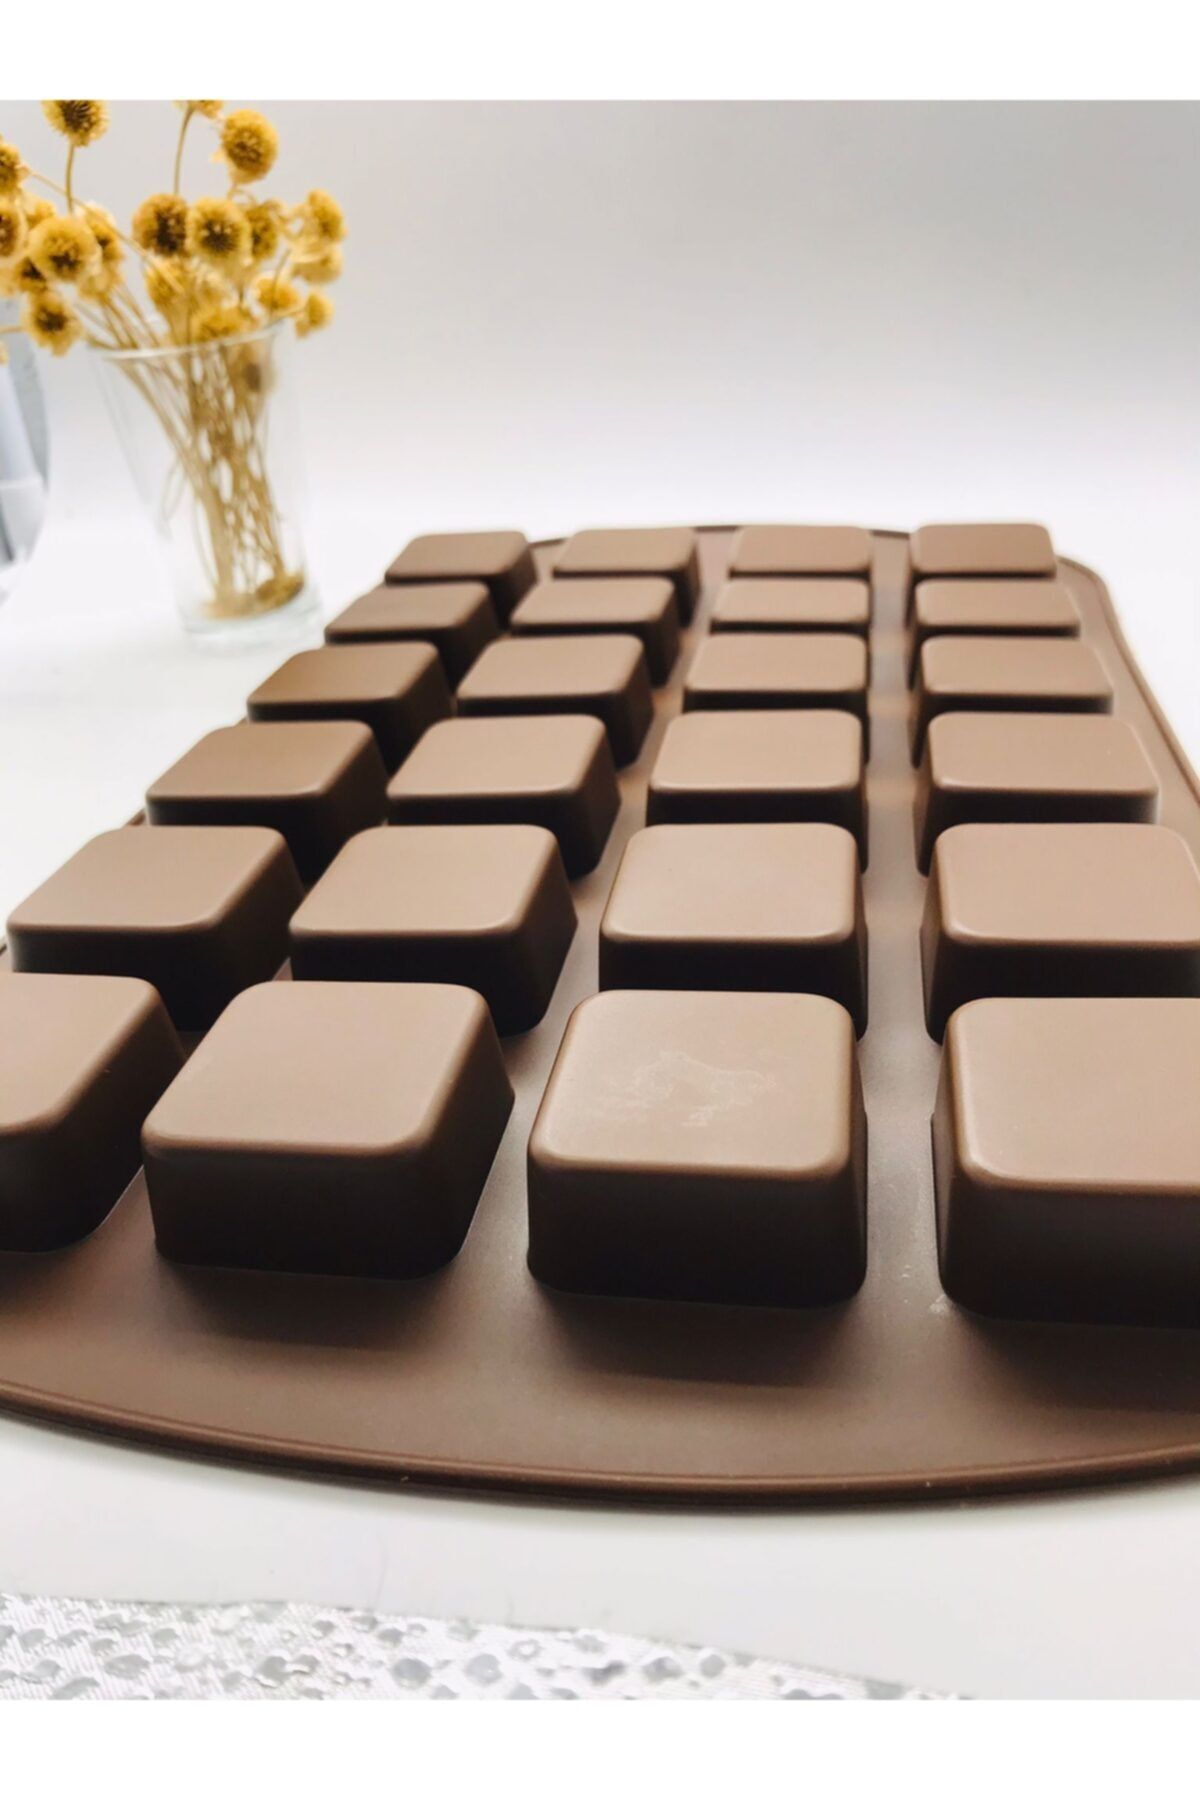 Siliko World Silikon Sabun Mum Muffin Çikolata Kalıbı